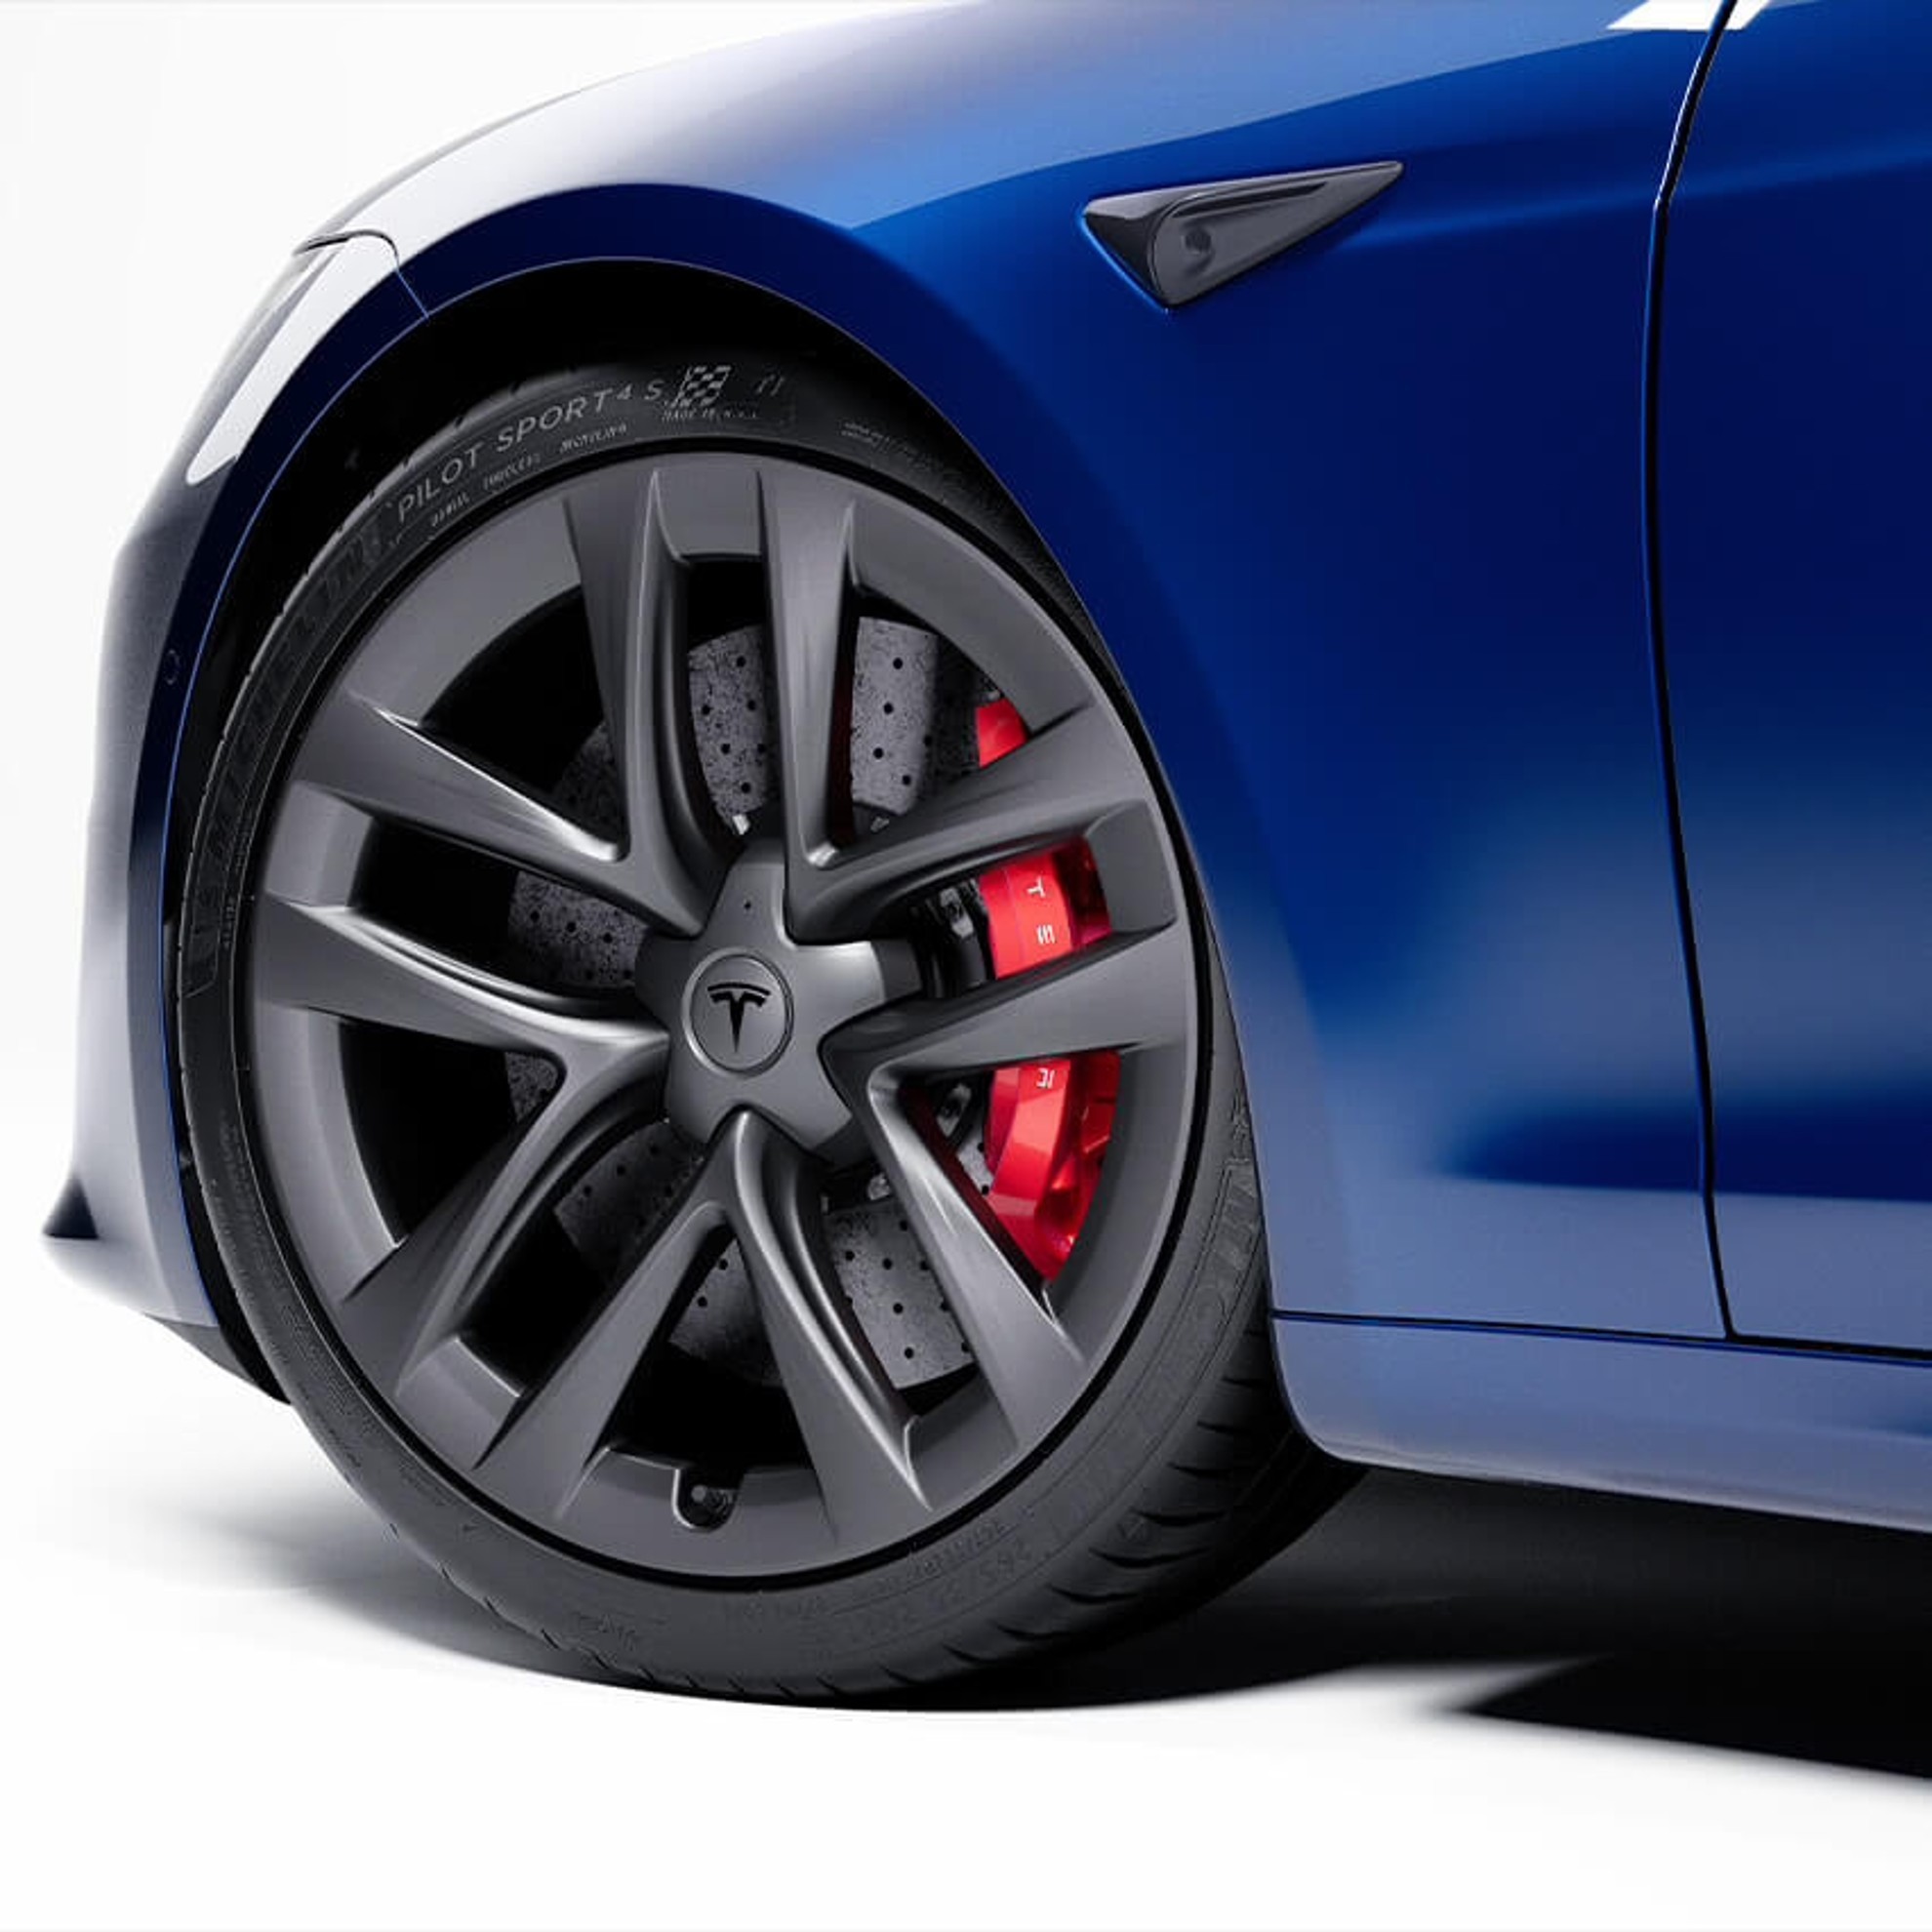 Tesla Model S Plaid - frenos cermicos - kit frenos carbonocermicos - 20.000 dlares - precio